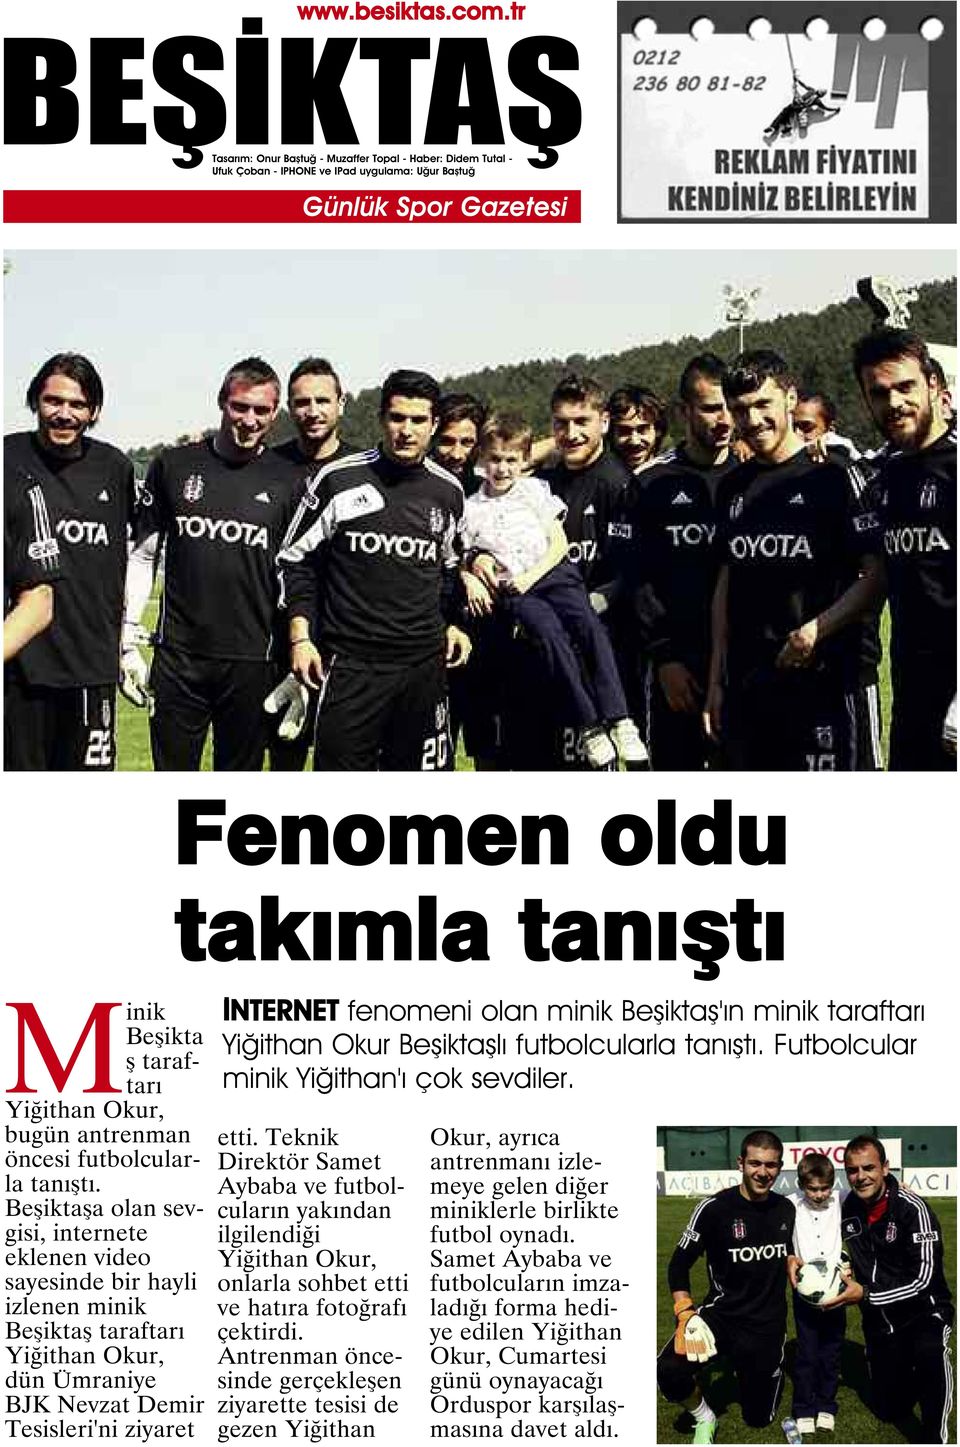 Beşiktaş'ın minik taraftarı Yiğithan Okur Beşiktaşlı futbolcularla tanıştı. Futbolcular minik Yiğithan'ı çok sevdiler. etti.